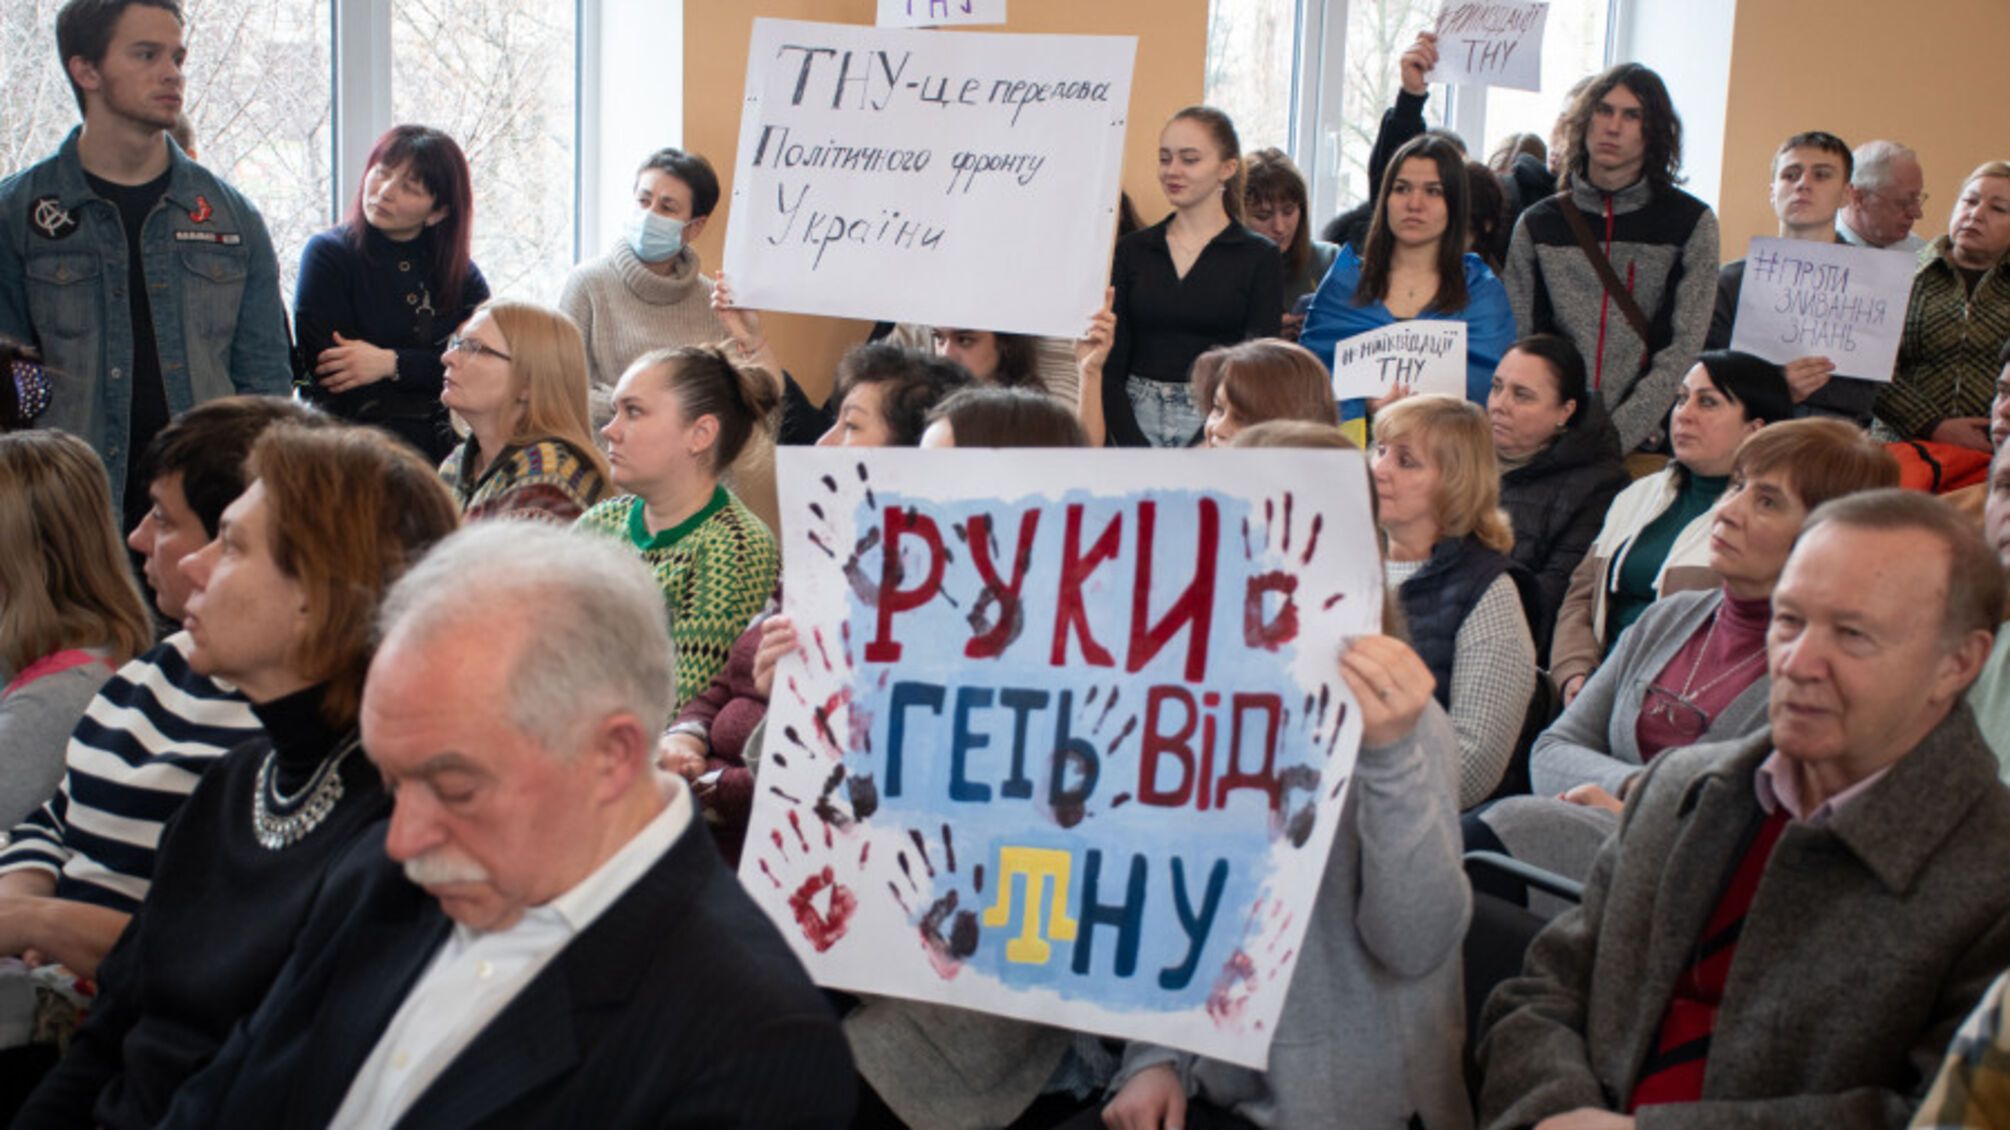 МОН ликвидирует единственный эвакуированный из Крыма вуз: Таврический университет хотят присоединить к 'Могилянке'